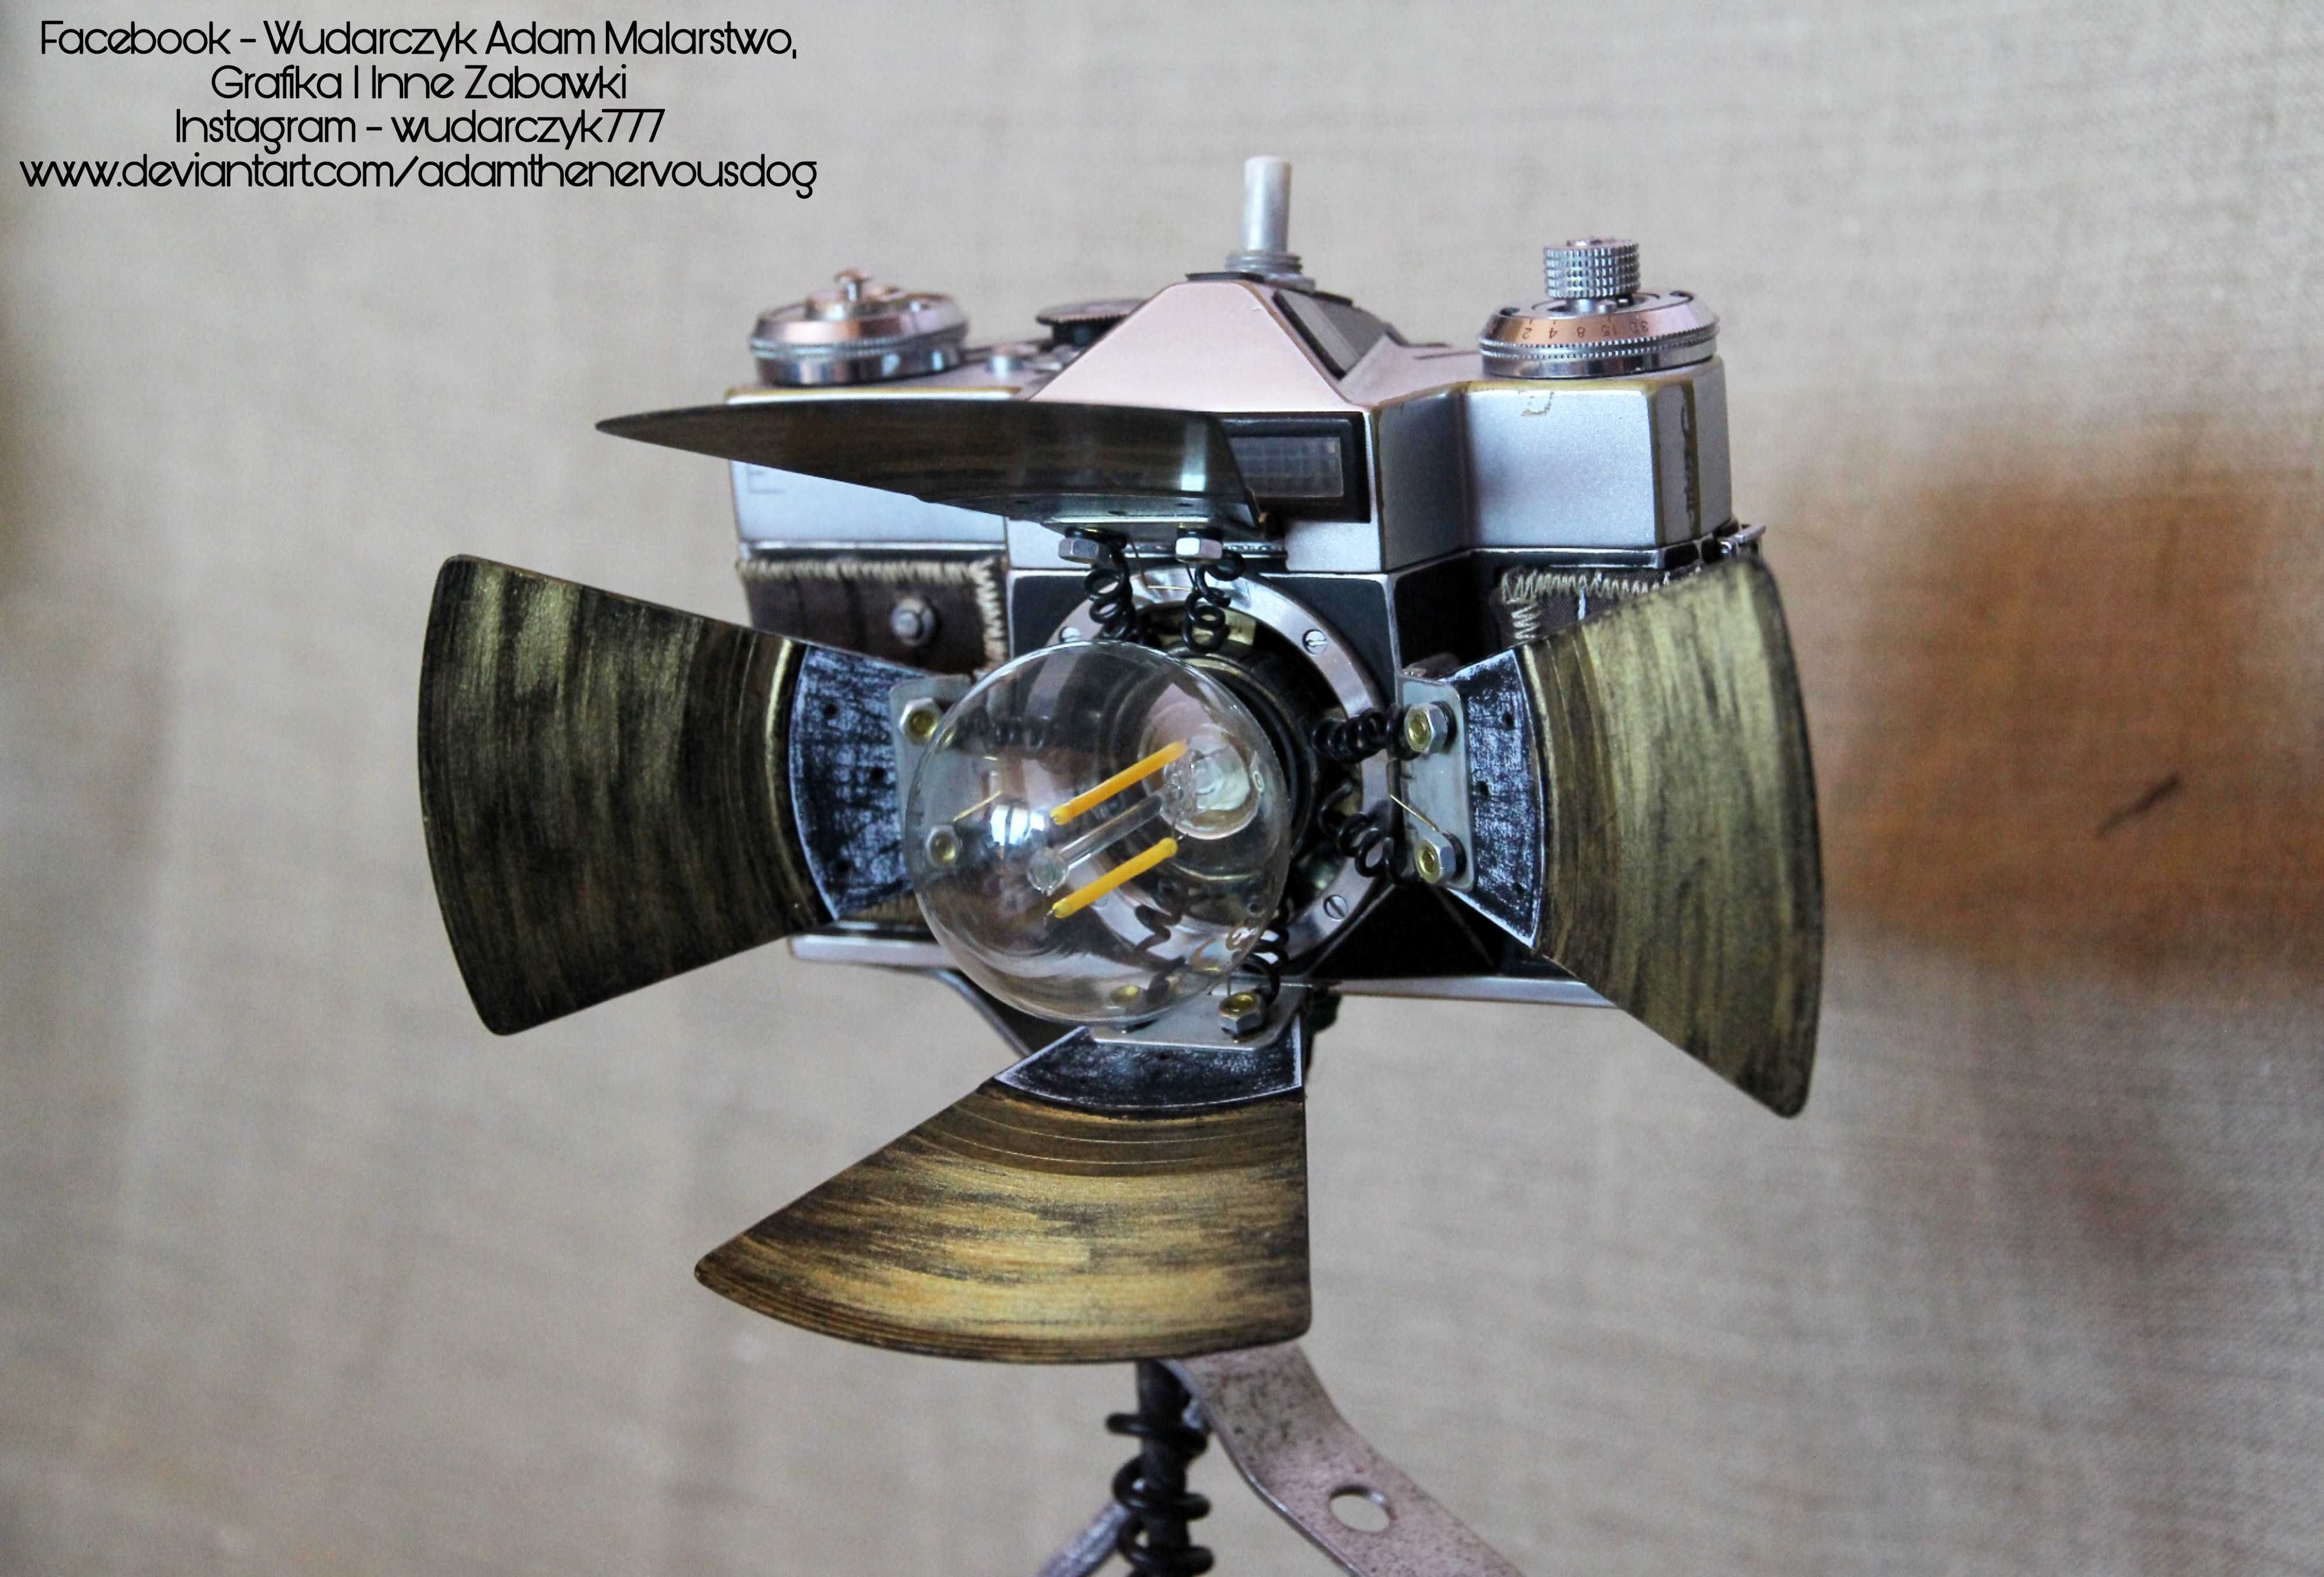 Lampa z aparatu fotograficznego Zenit